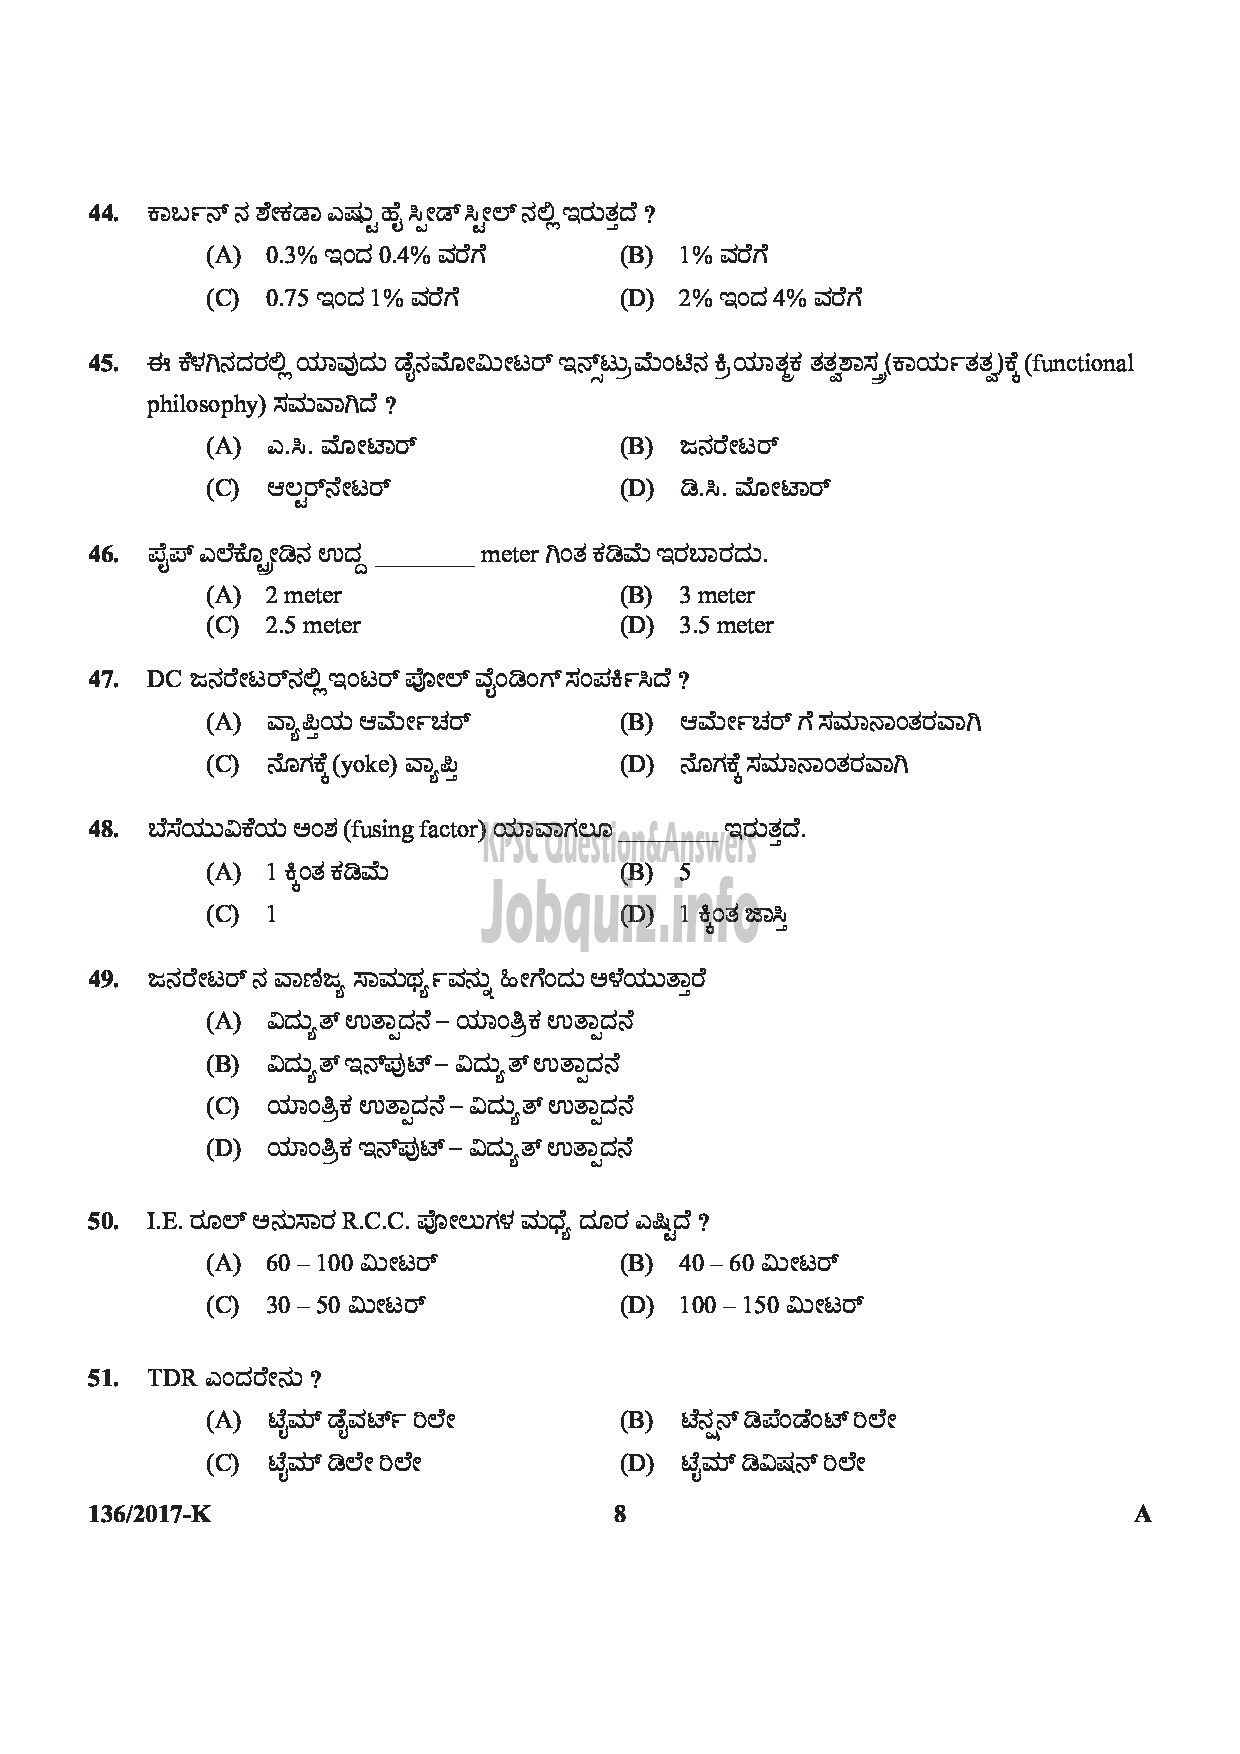 Kerala PSC Question Paper - METER READER/SPOT BILLER SPECIAL RECRUITMENT FROM AMONG ST ONLY MEDIUM OF QUESTION KANNADA-8